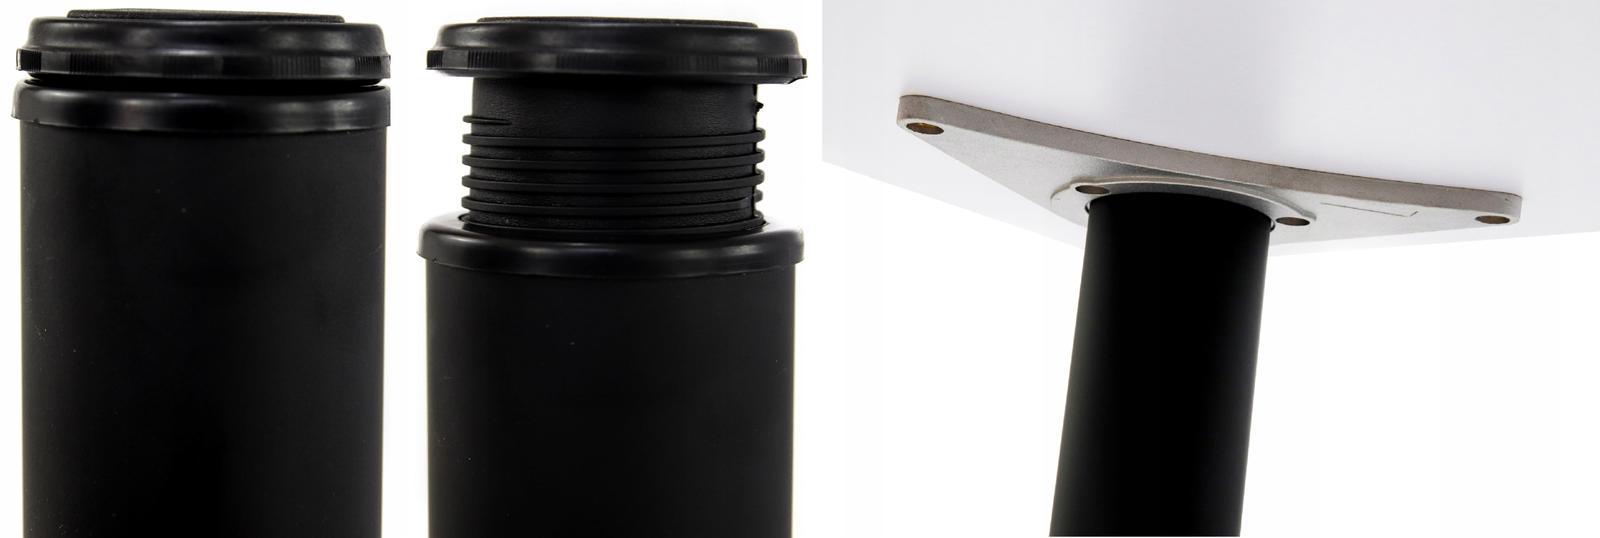 Biurko gamingowe 240x160x80 cm czarne narożne ledy radiowe do pokoju gracza nr. 6